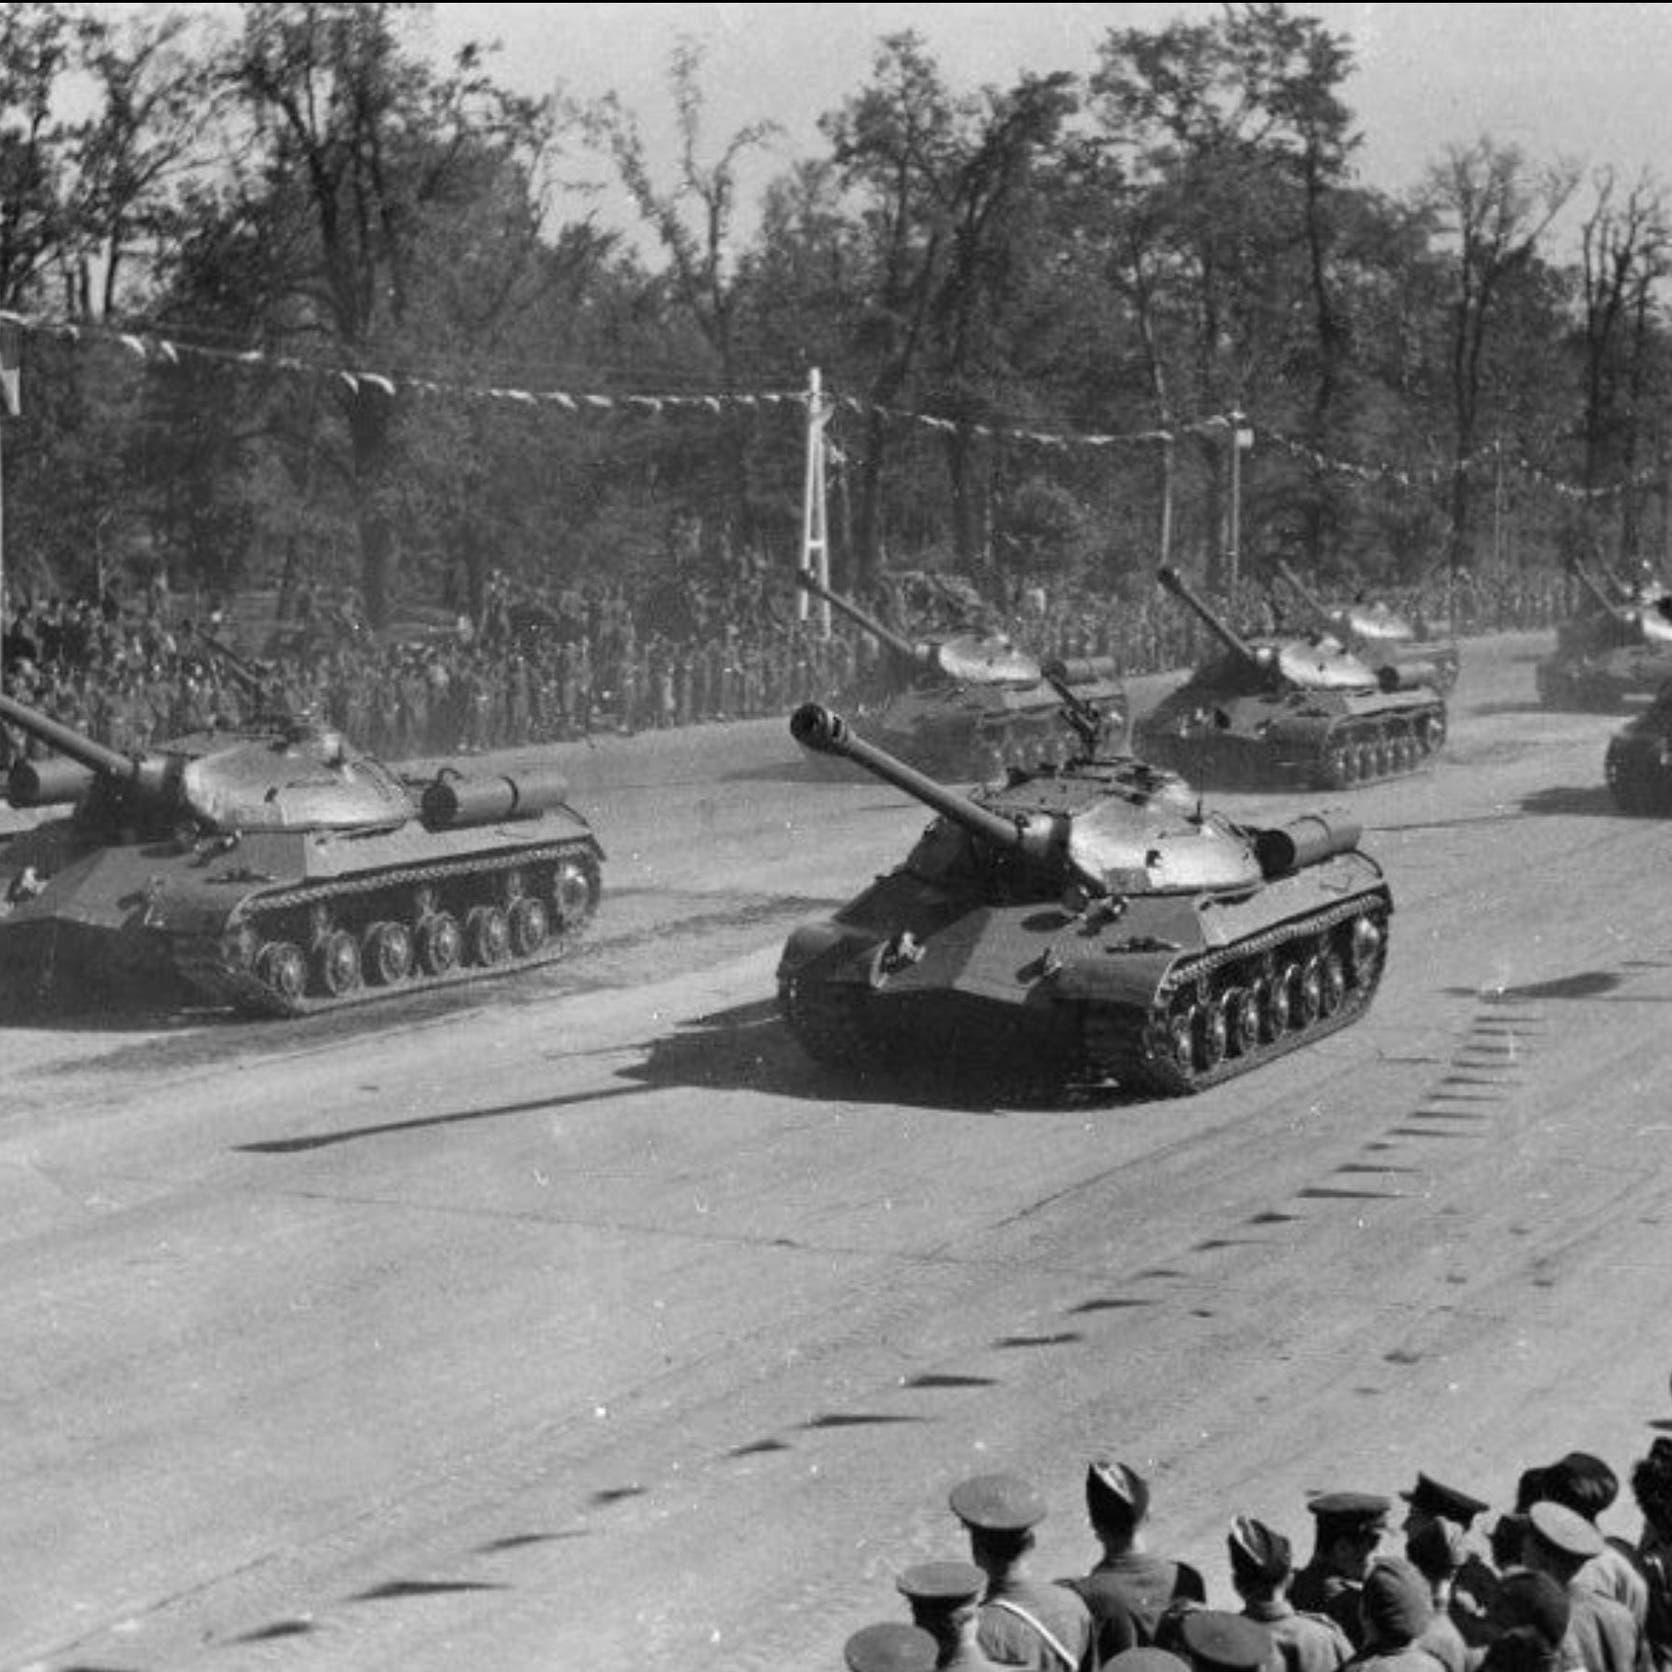  كيف وجهت دبابات السوفييت ضربة قاضية لقوات هتلر؟